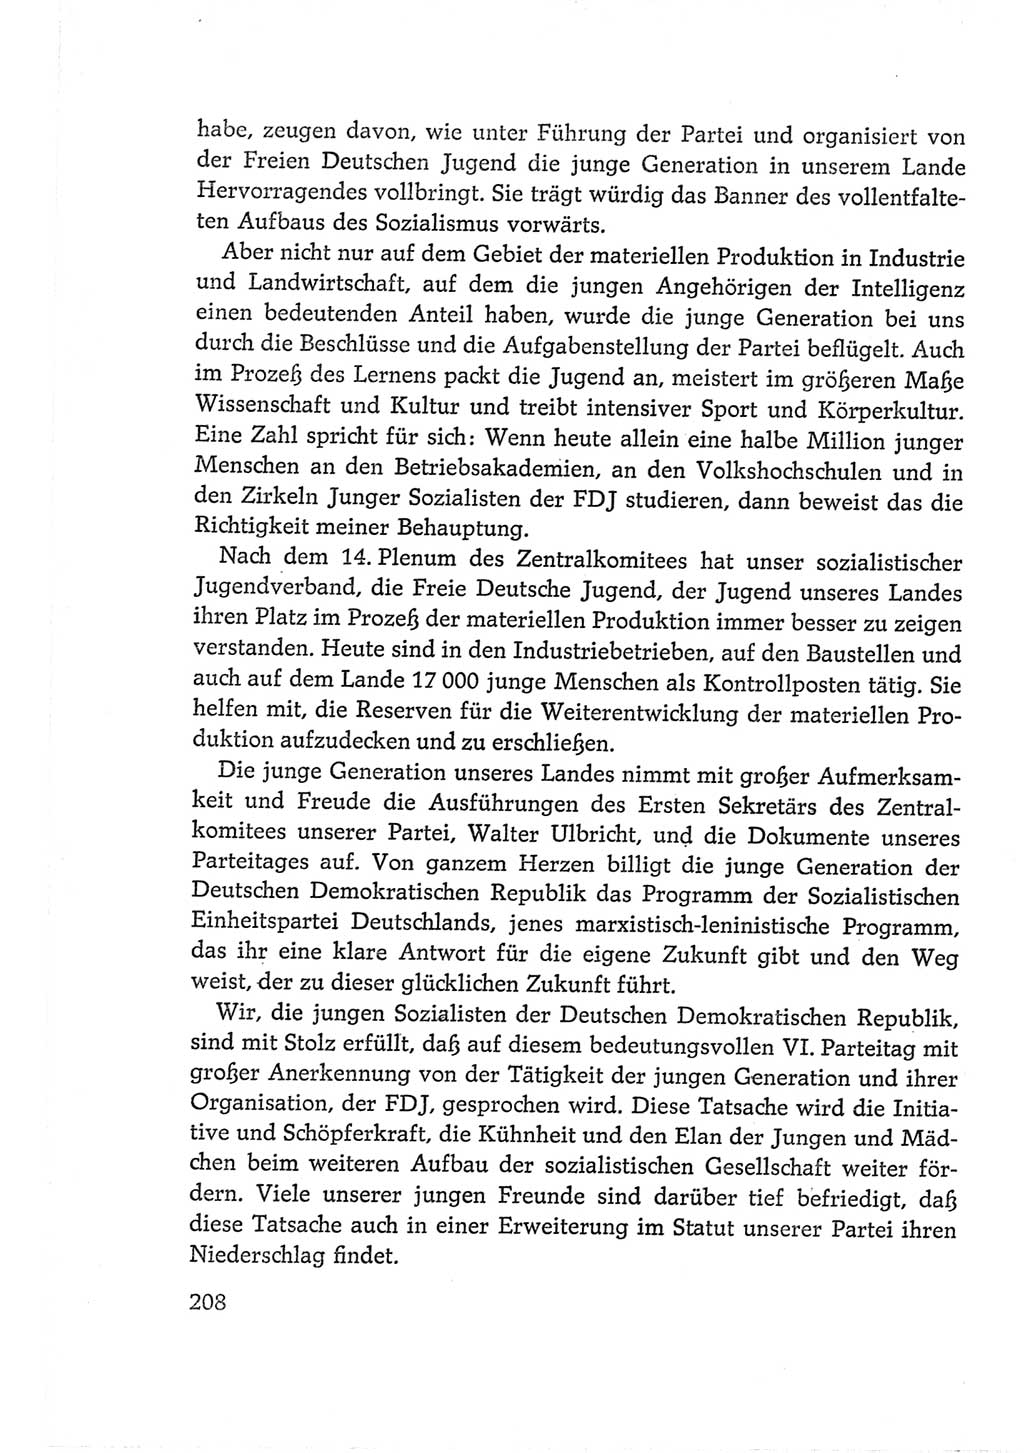 Protokoll der Verhandlungen des Ⅵ. Parteitages der Sozialistischen Einheitspartei Deutschlands (SED) [Deutsche Demokratische Republik (DDR)] 1963, Band Ⅱ, Seite 208 (Prot. Verh. Ⅵ. PT SED DDR 1963, Bd. Ⅱ, S. 208)